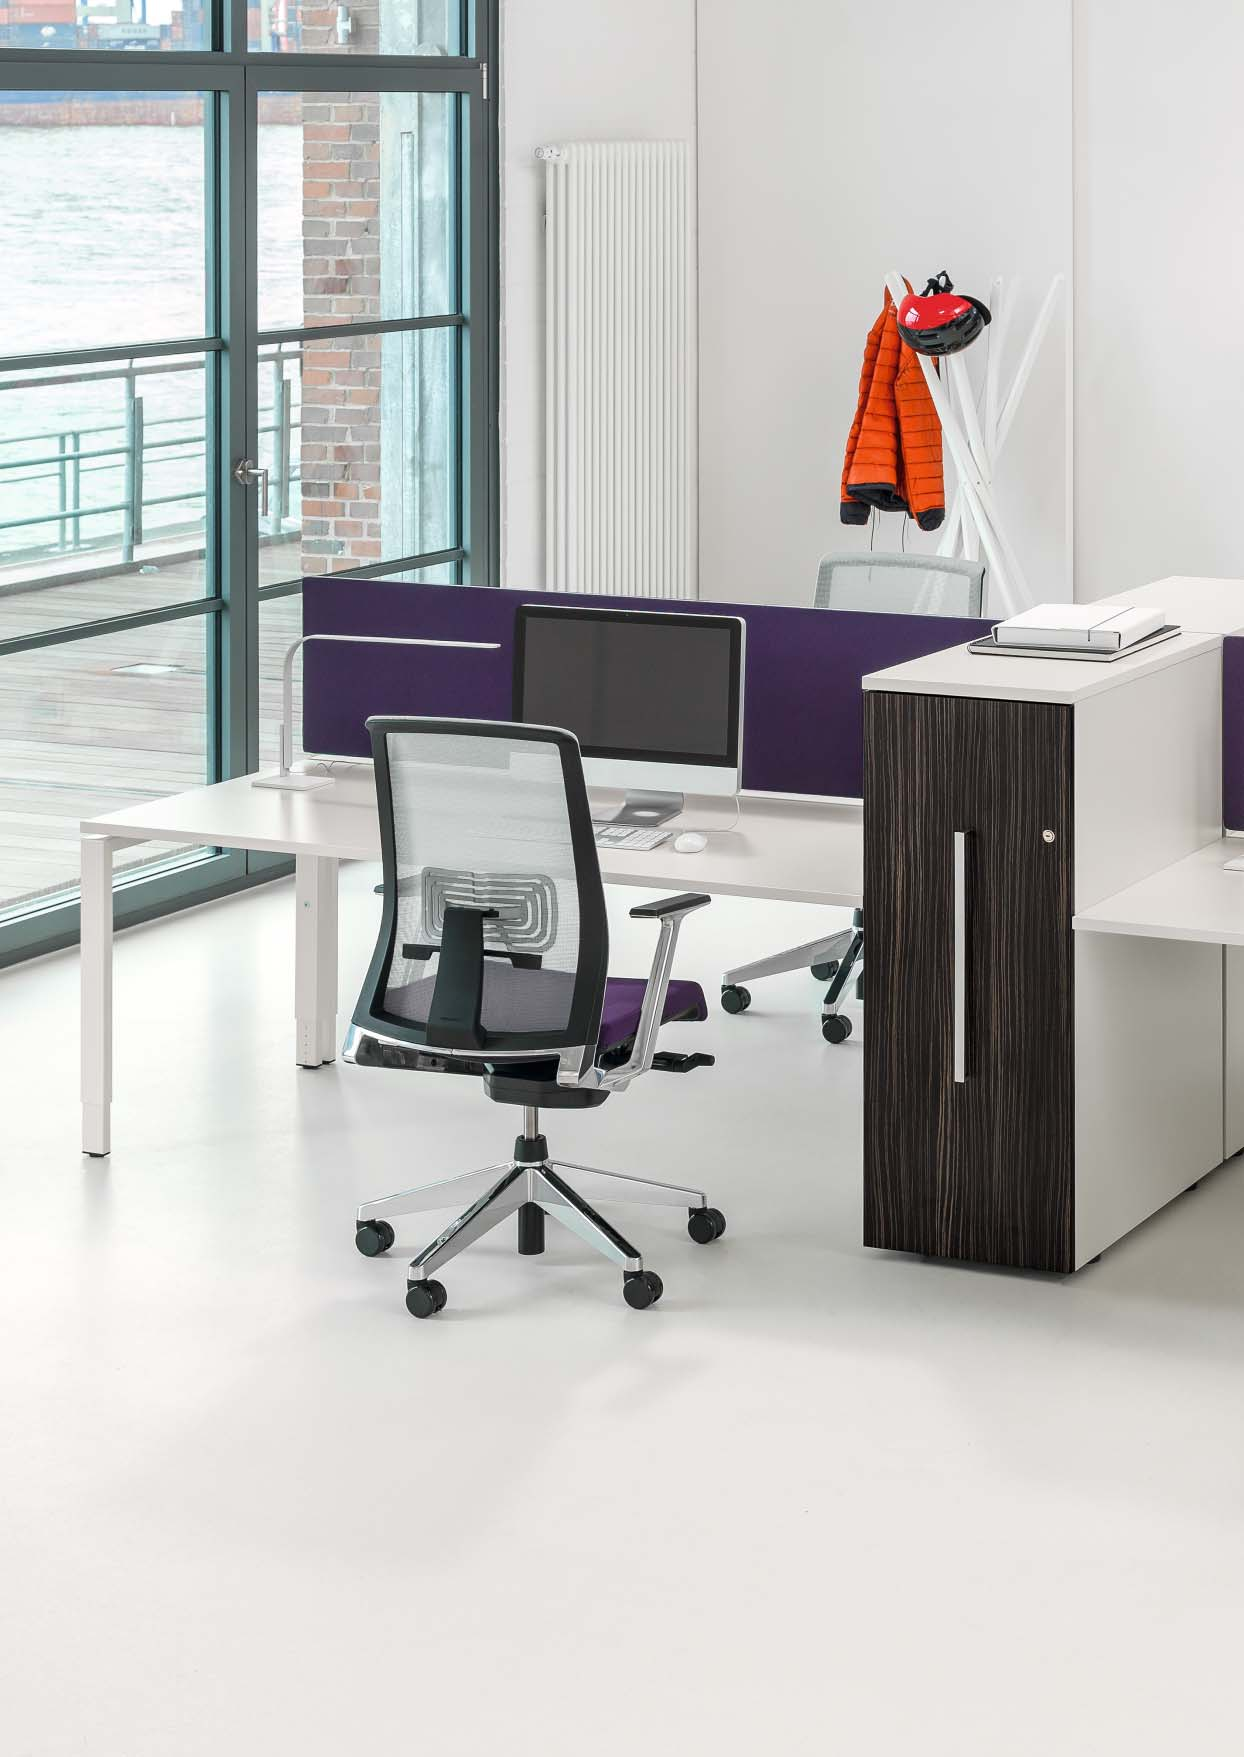 Apothekerskasten brengen structuur aan in kantoorruimten, dragen bij aan de efficiënte indeling van werkzones en perfectioneren de werkplek.